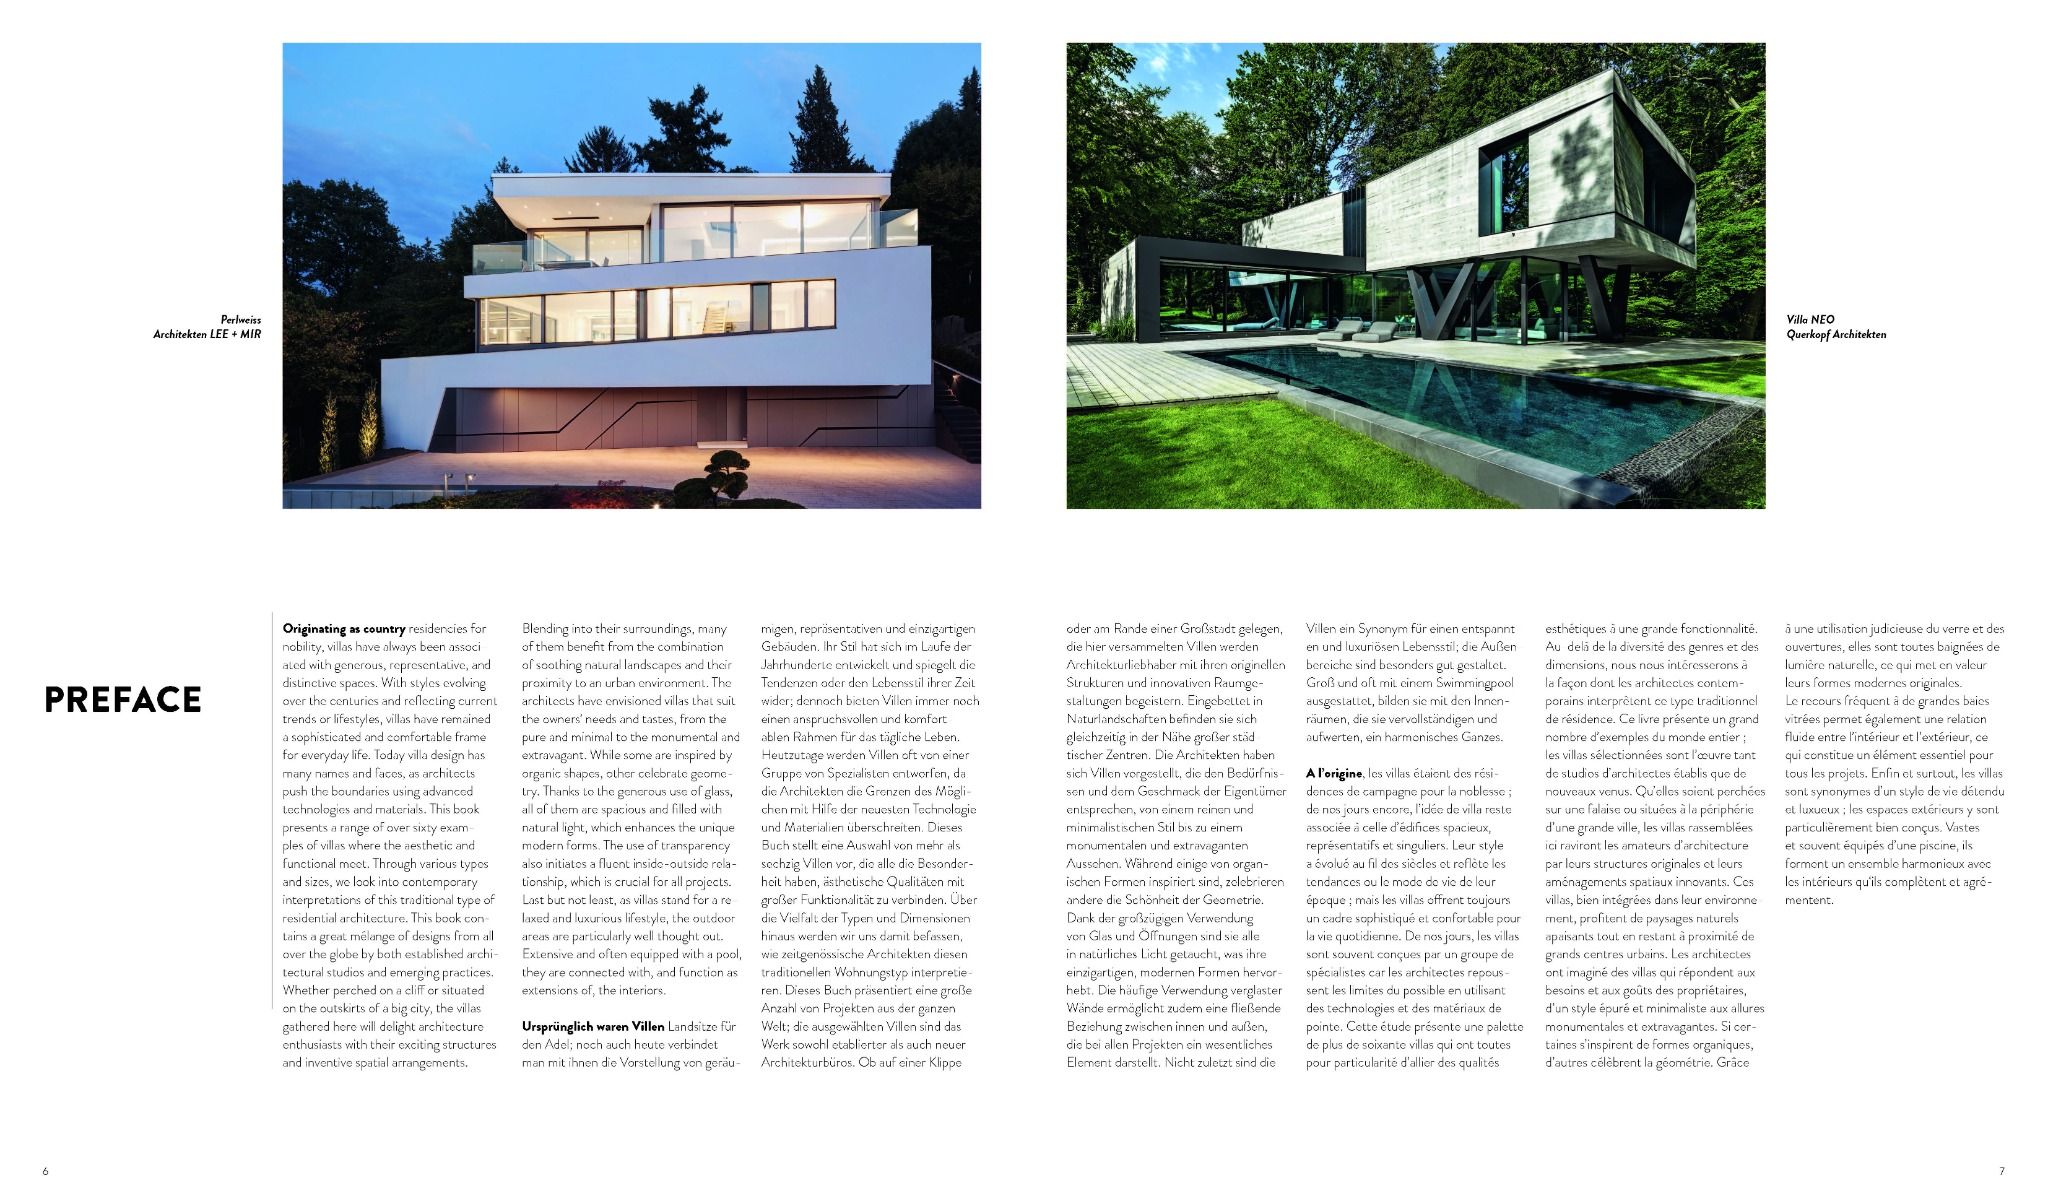  Villa Design_Agata Toromanoff_9783037682630_Braun Publishing AG 